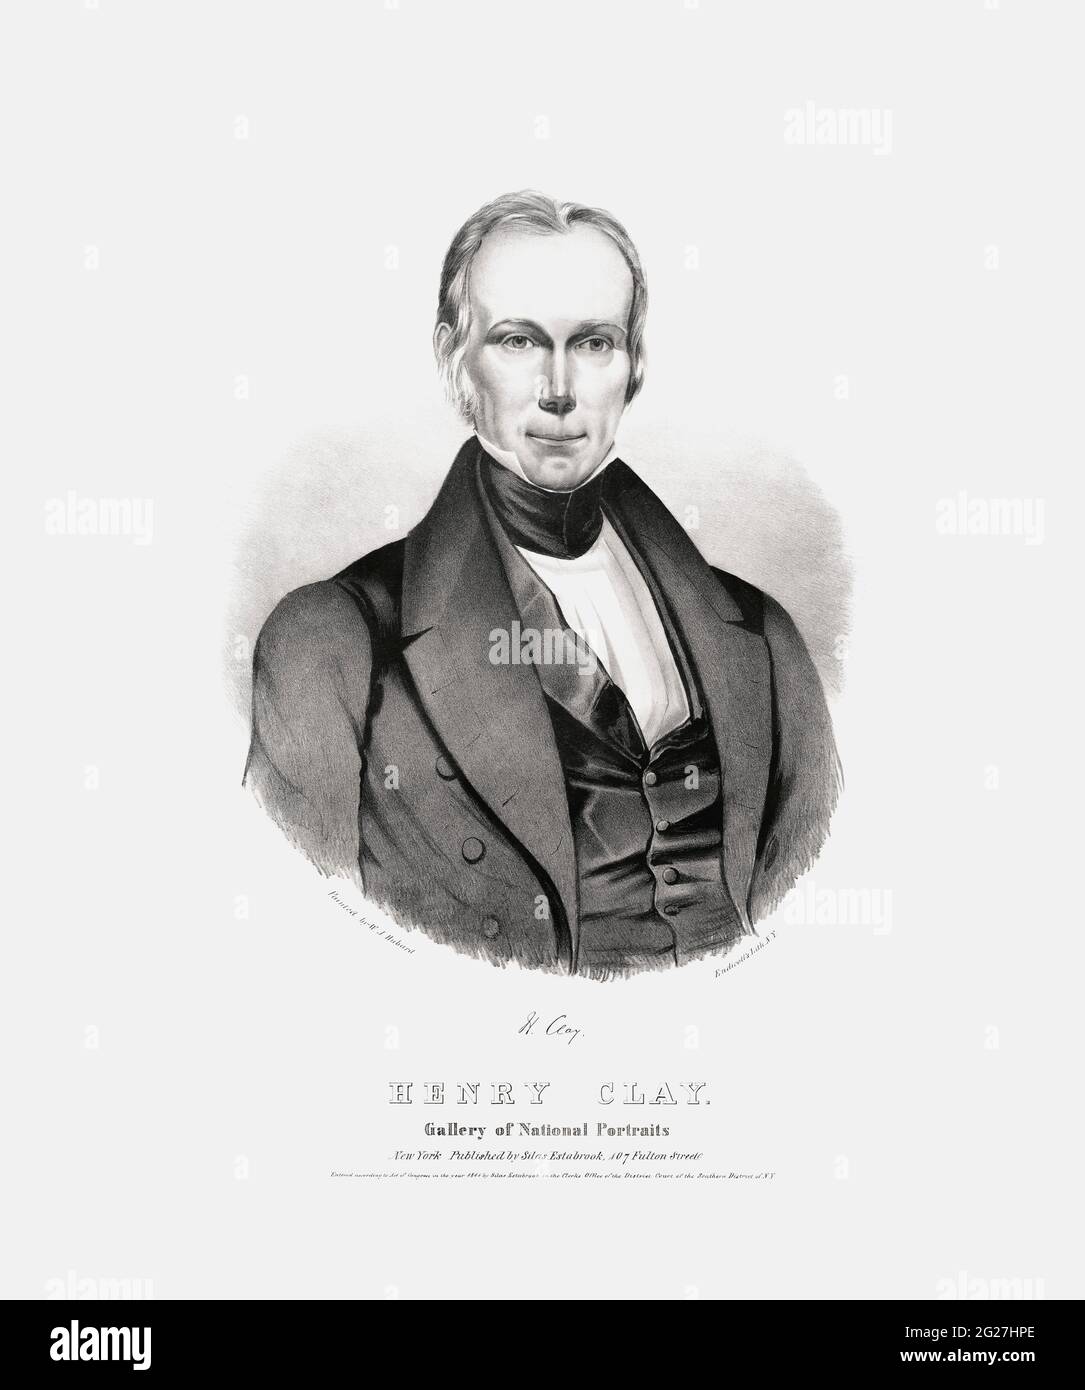 Porträt von Henry Clay, einem politischen Staatsmann, der den Staat Kentucky vertrat. Stockfoto